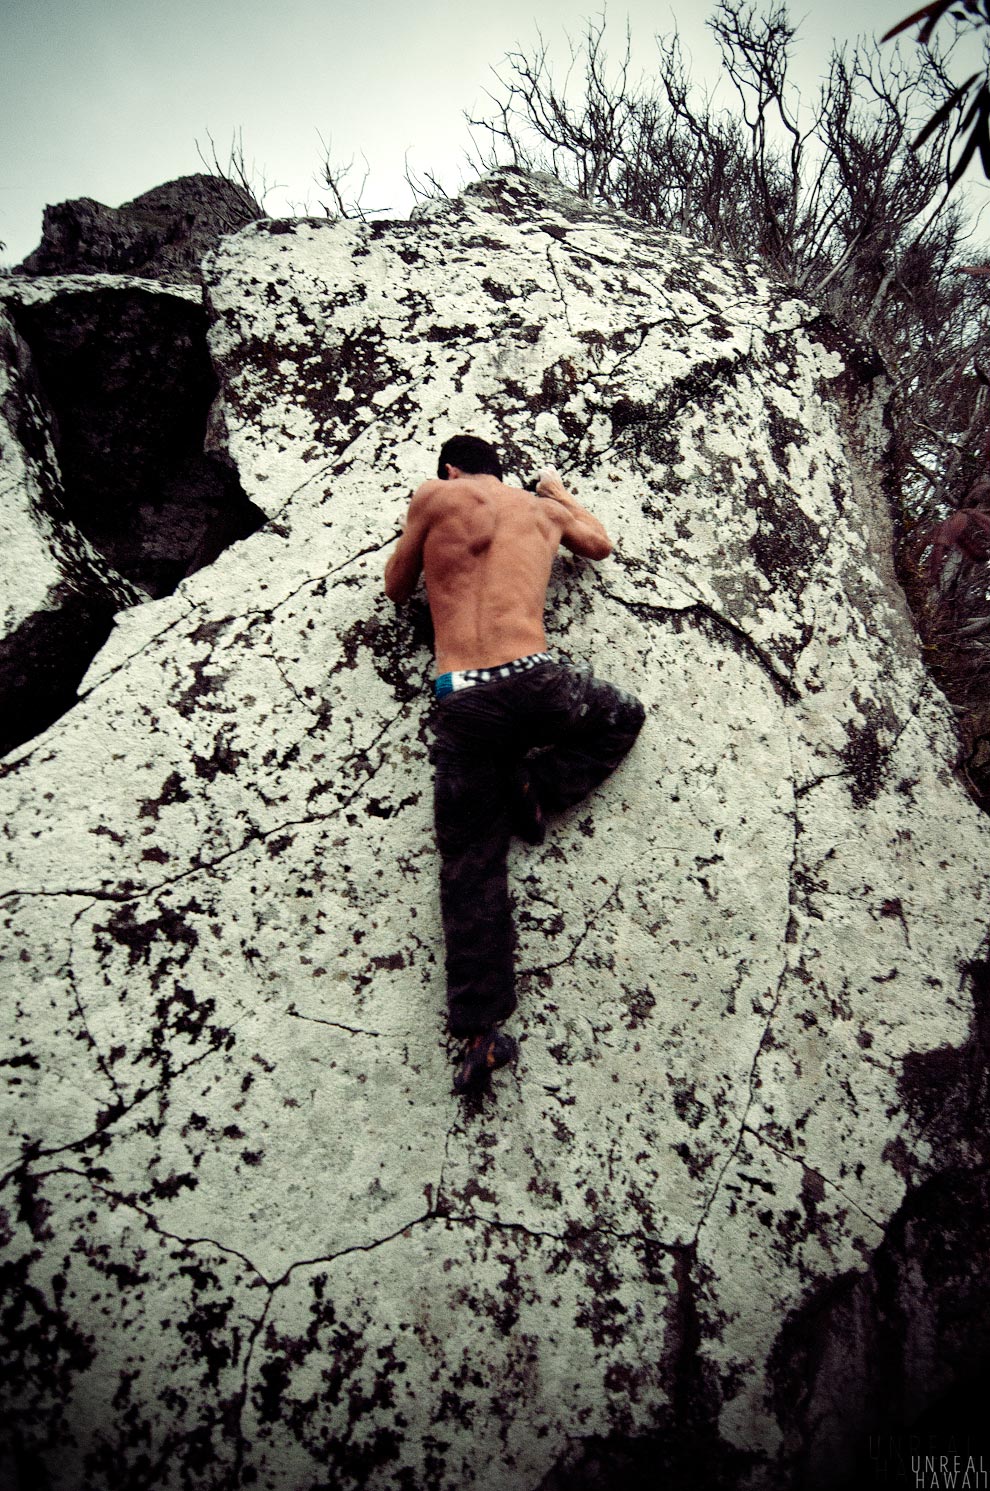 Matt Lutey, Hawaii rock climber.